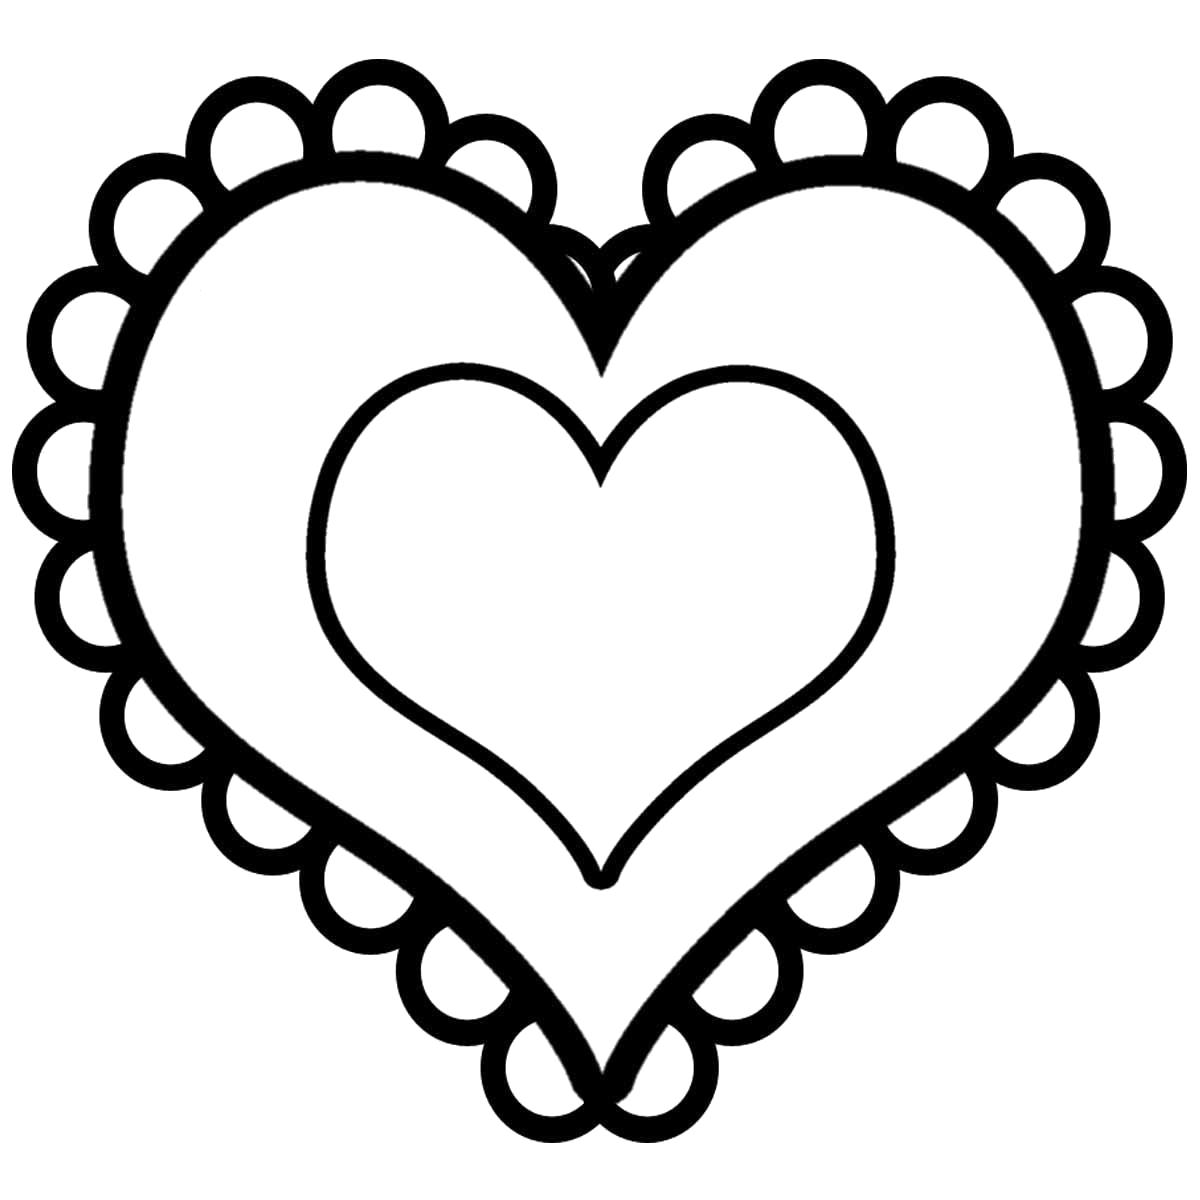 Раскраска  шаблоны сердечек для вырезания  двойное сердце с кружевом для вырезания из бумаги. Скачать 14 февраля, сердце.  Распечатать День святого валентина